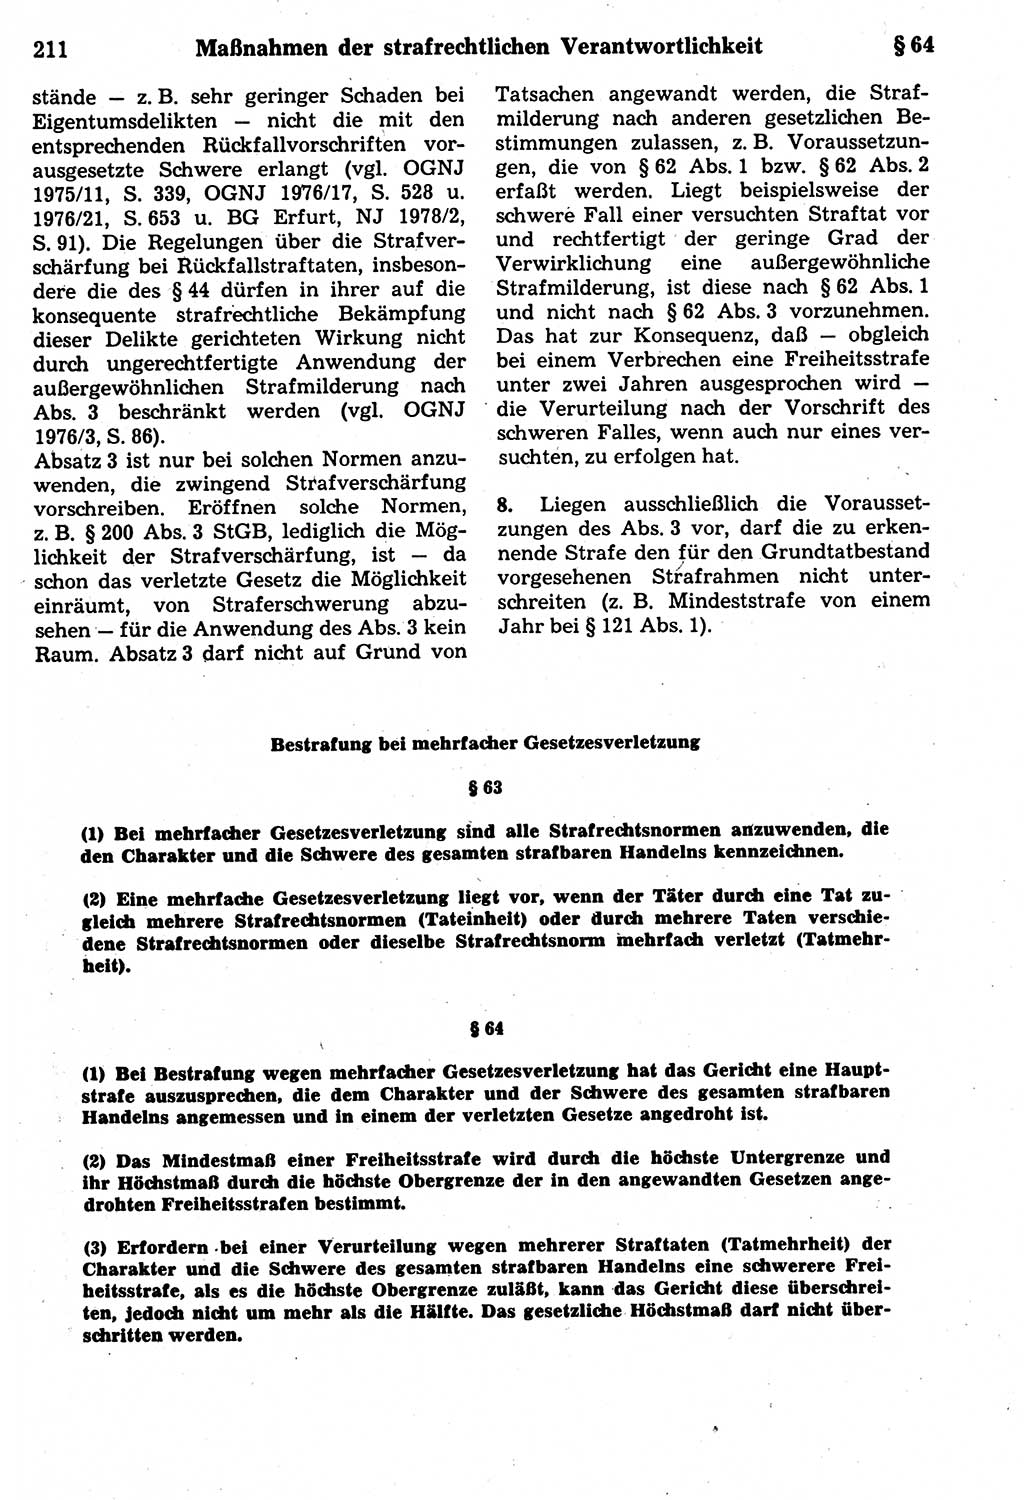 Strafrecht der Deutschen Demokratischen Republik (DDR), Kommentar zum Strafgesetzbuch (StGB) 1987, Seite 211 (Strafr. DDR Komm. StGB 1987, S. 211)